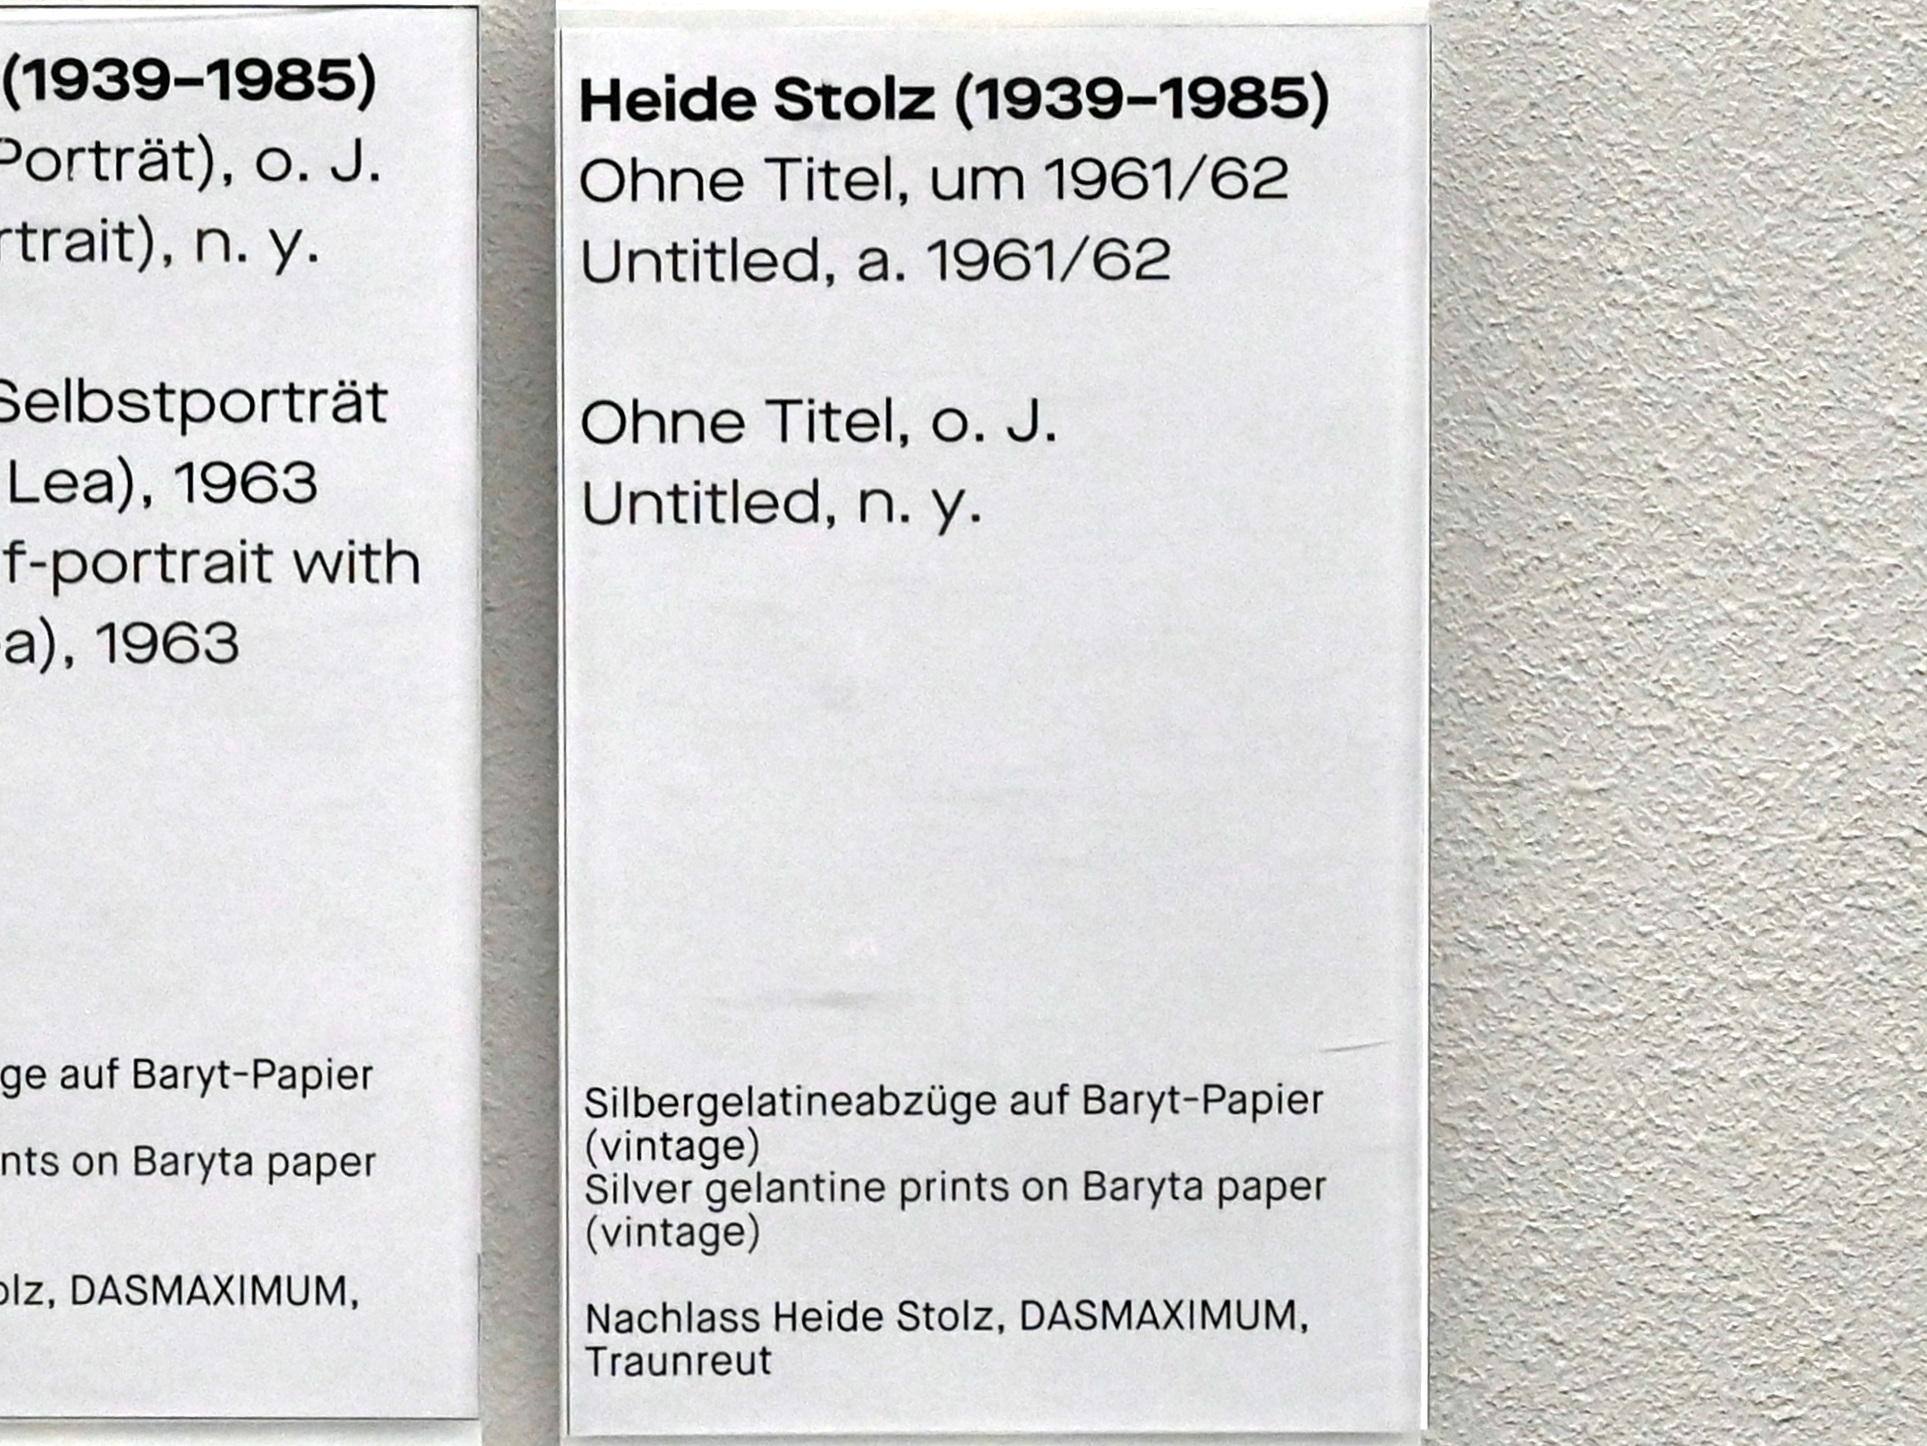 Heide Stolz (1960–1969), Ohne Titel, Chemnitz, Museum Gunzenhauser, Saal 1.1 - Uwe Lausen und Heide Stolz, um 1961–1962, Bild 2/2